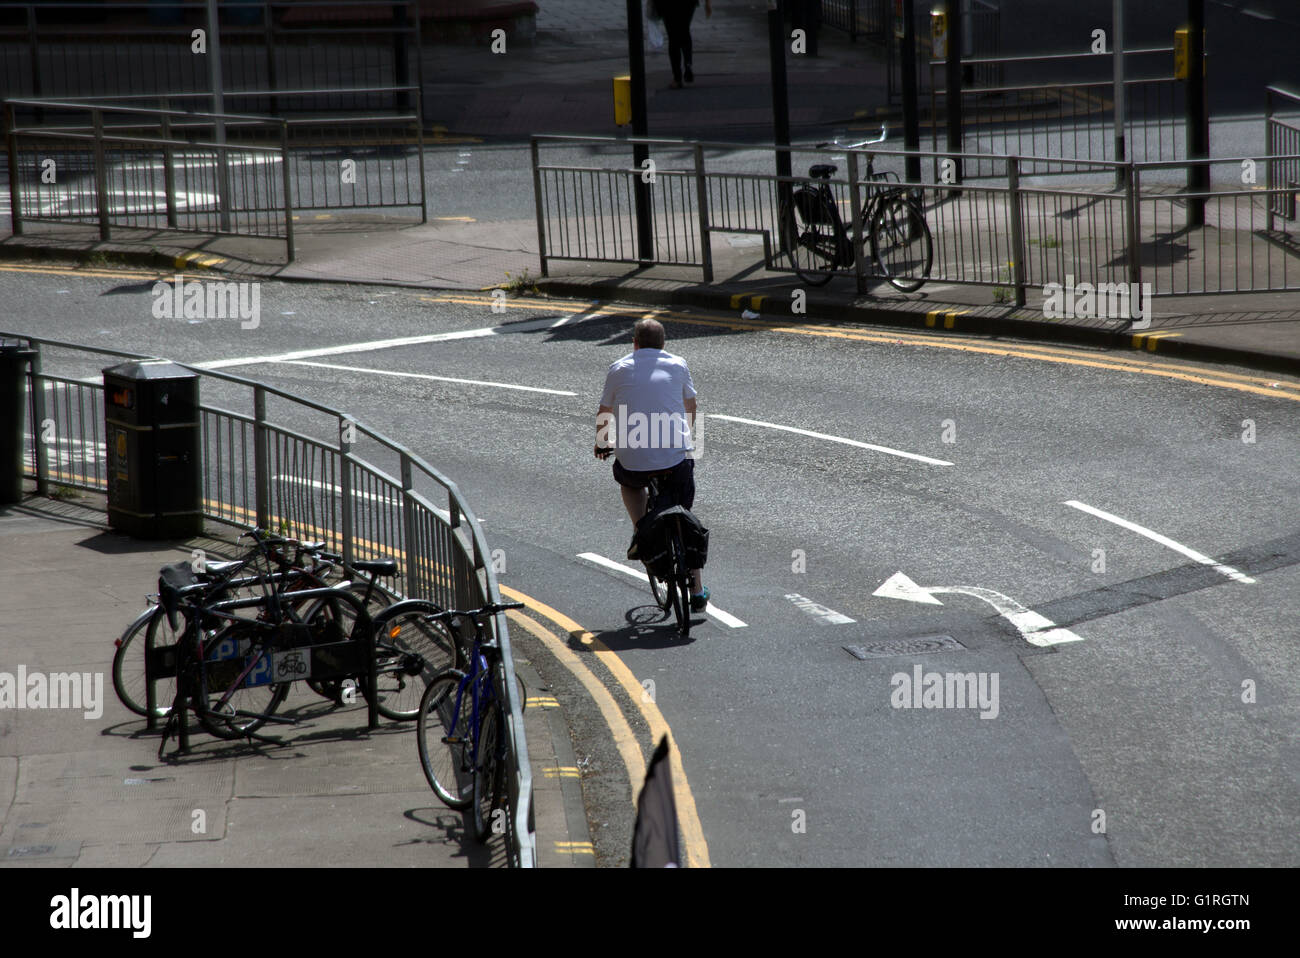 Mann mittleren Alters Radfahrer auf Fahrrad Rundung einer Stadt Ecke gesehen von oben, Glasgow, Schottland, Großbritannien. Stockfoto